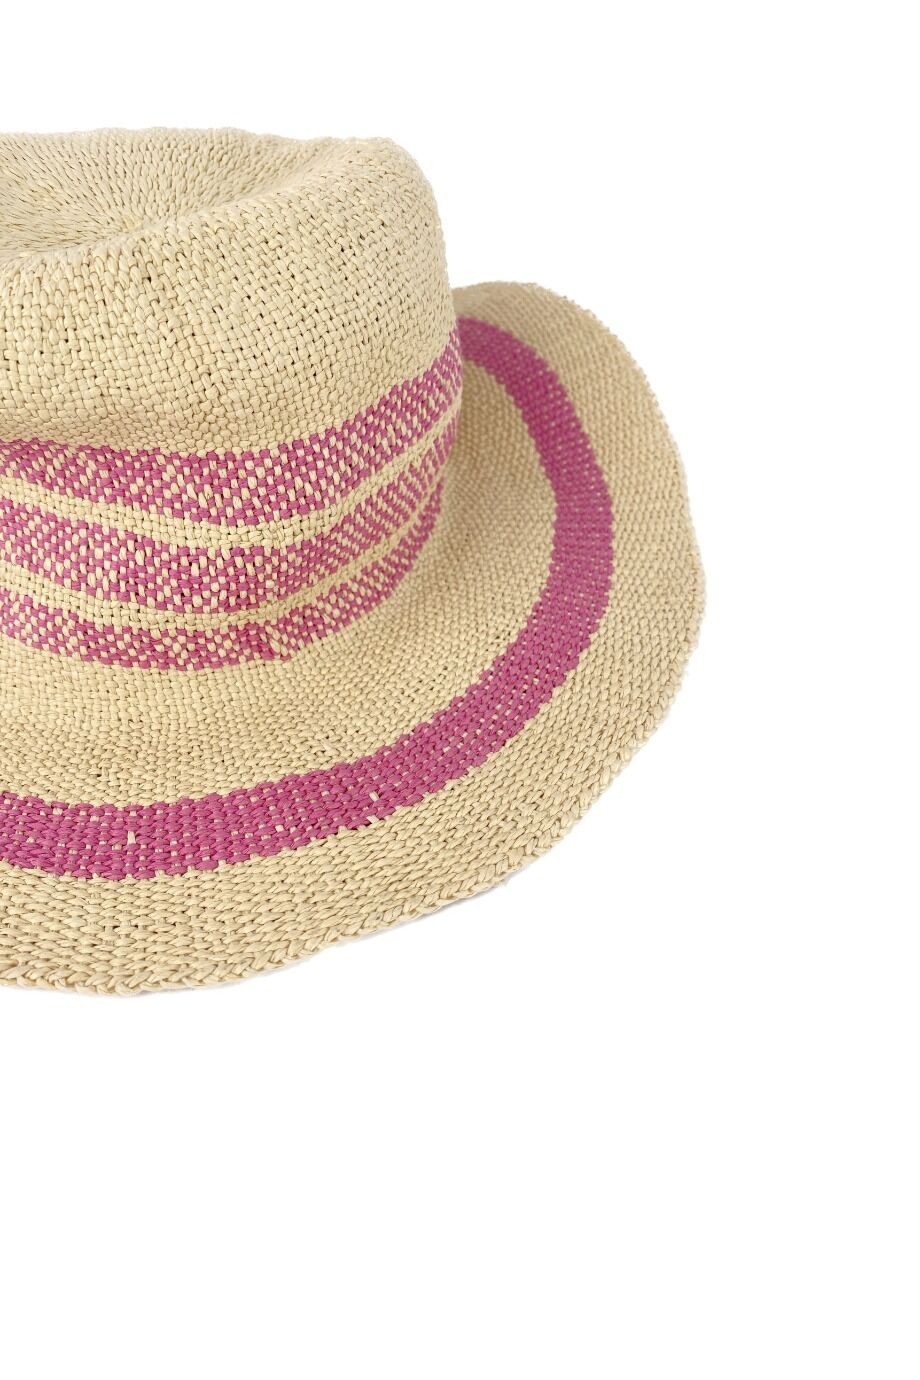 image 2 Детская соломенная шляпа с розовой окантовкой